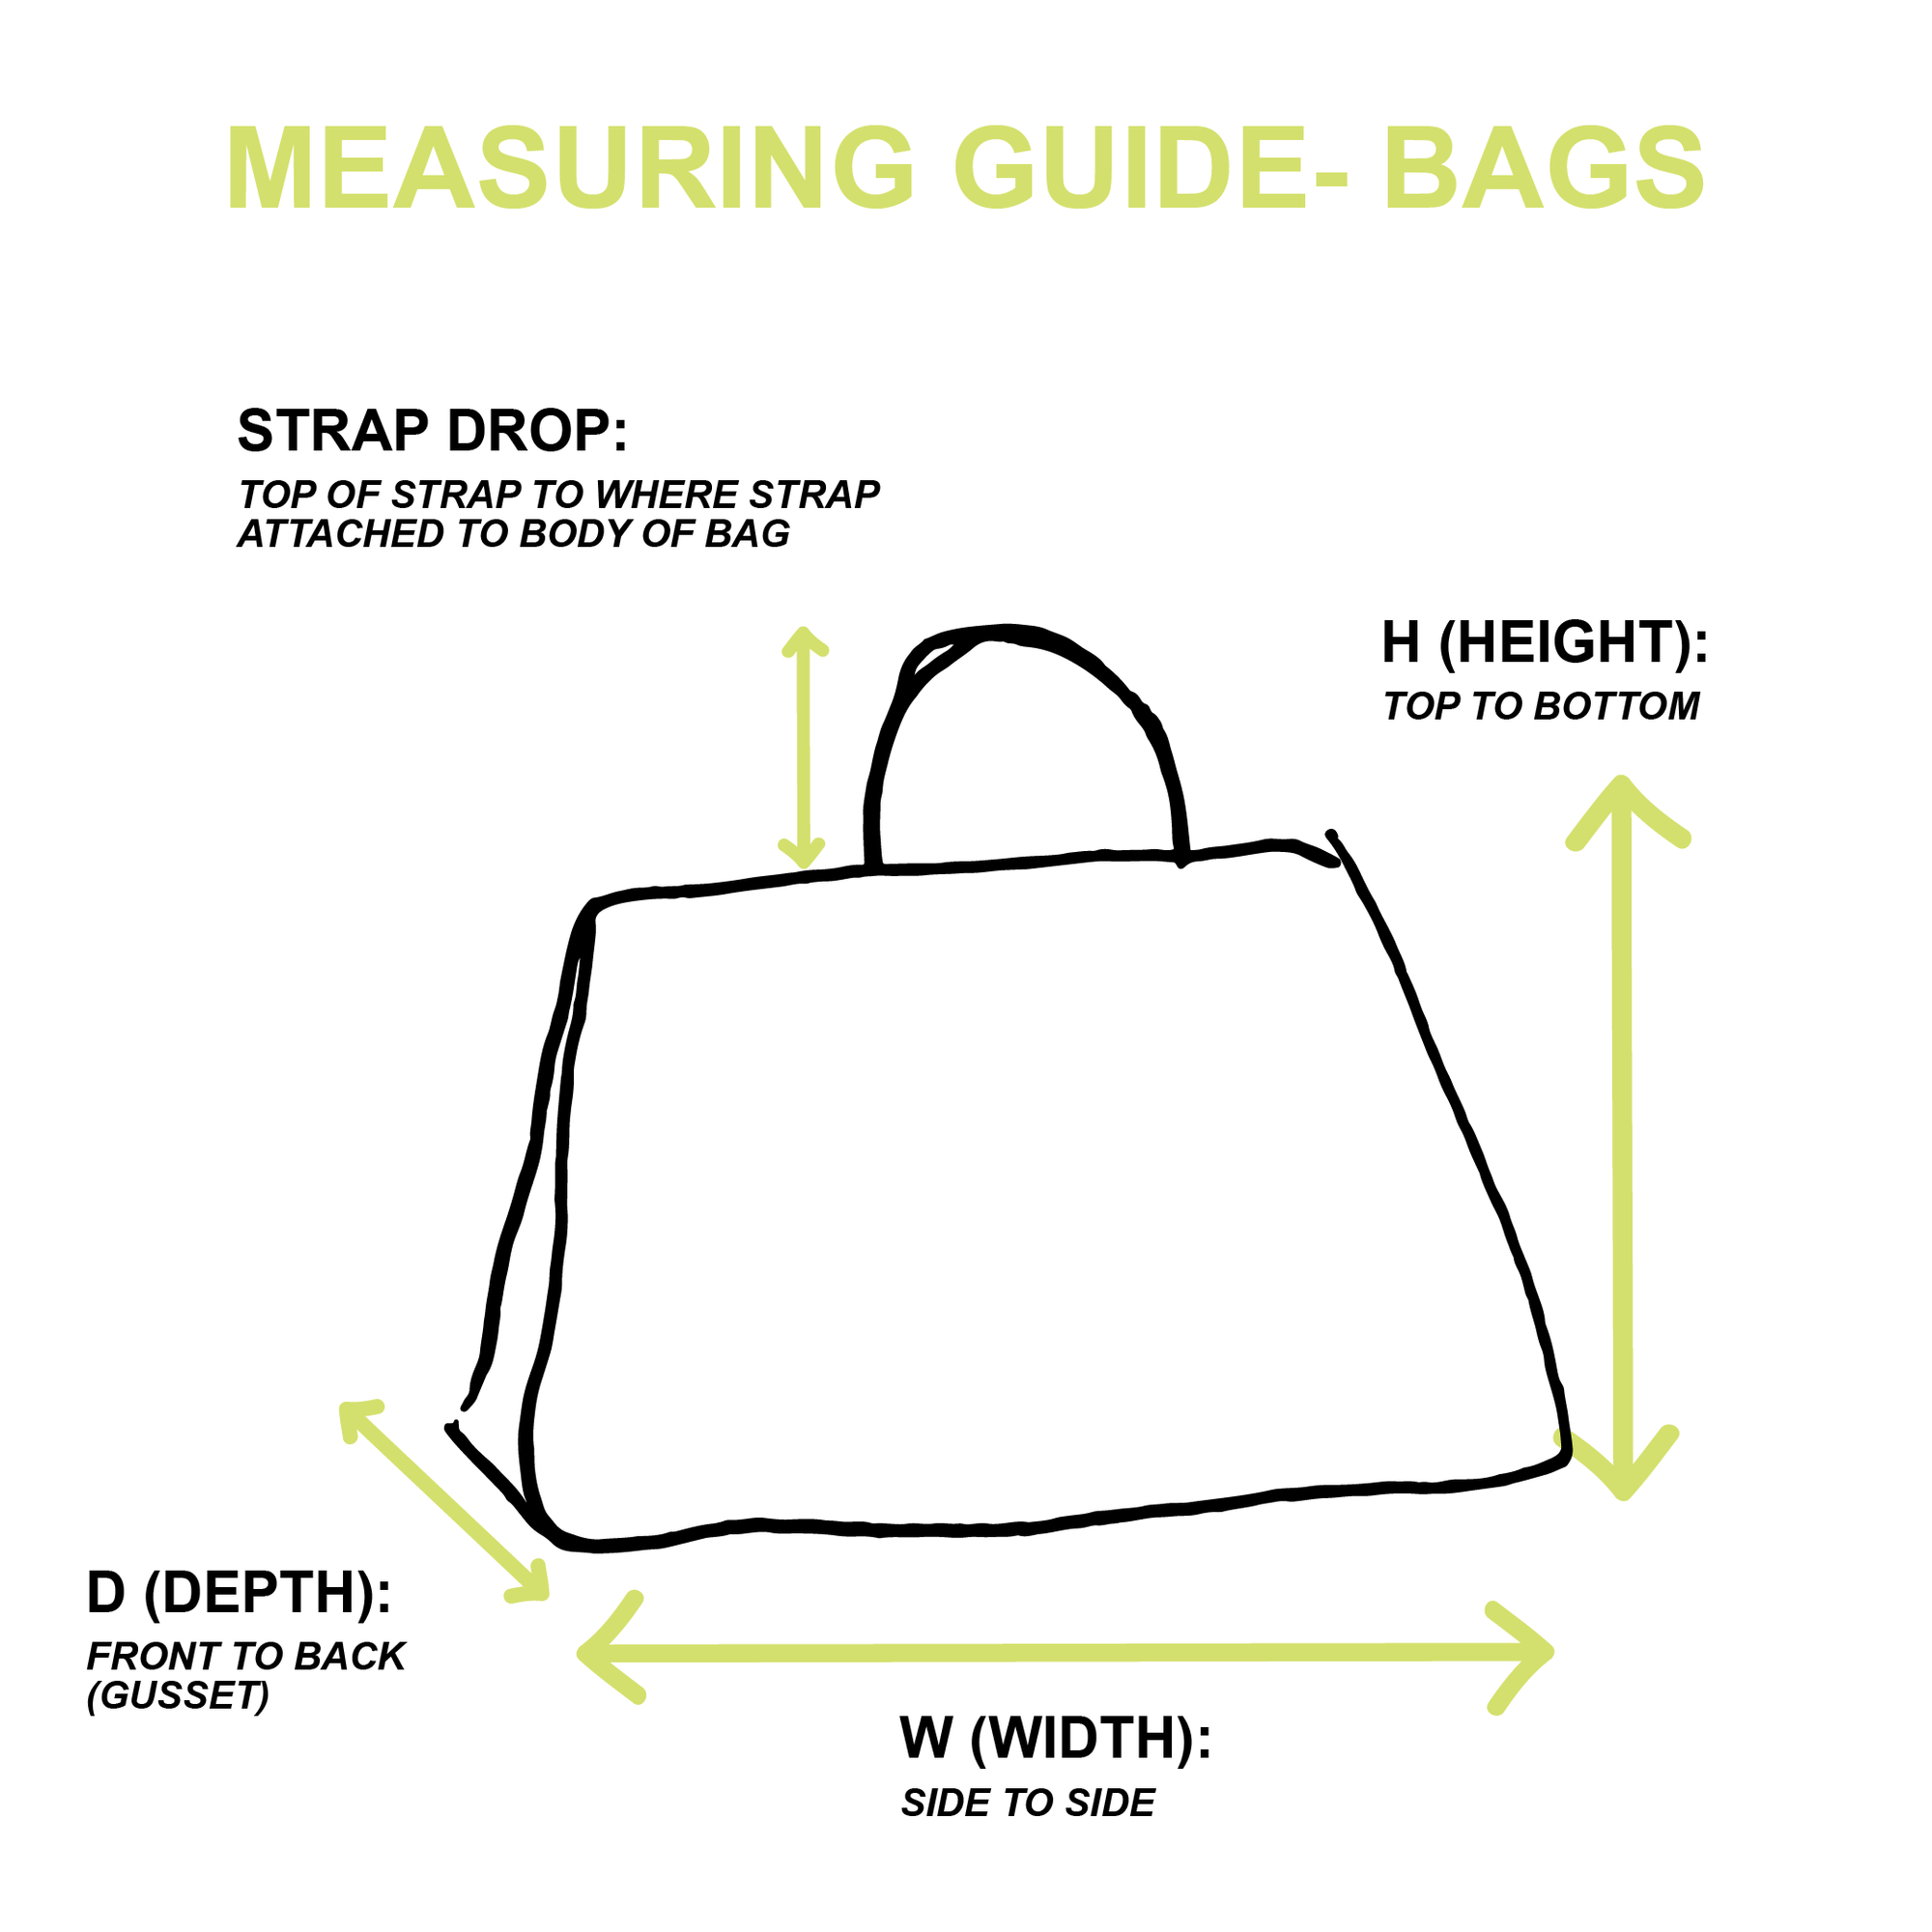 Louis Vuitton Brown Monogram Mini Loop Shoulder bag